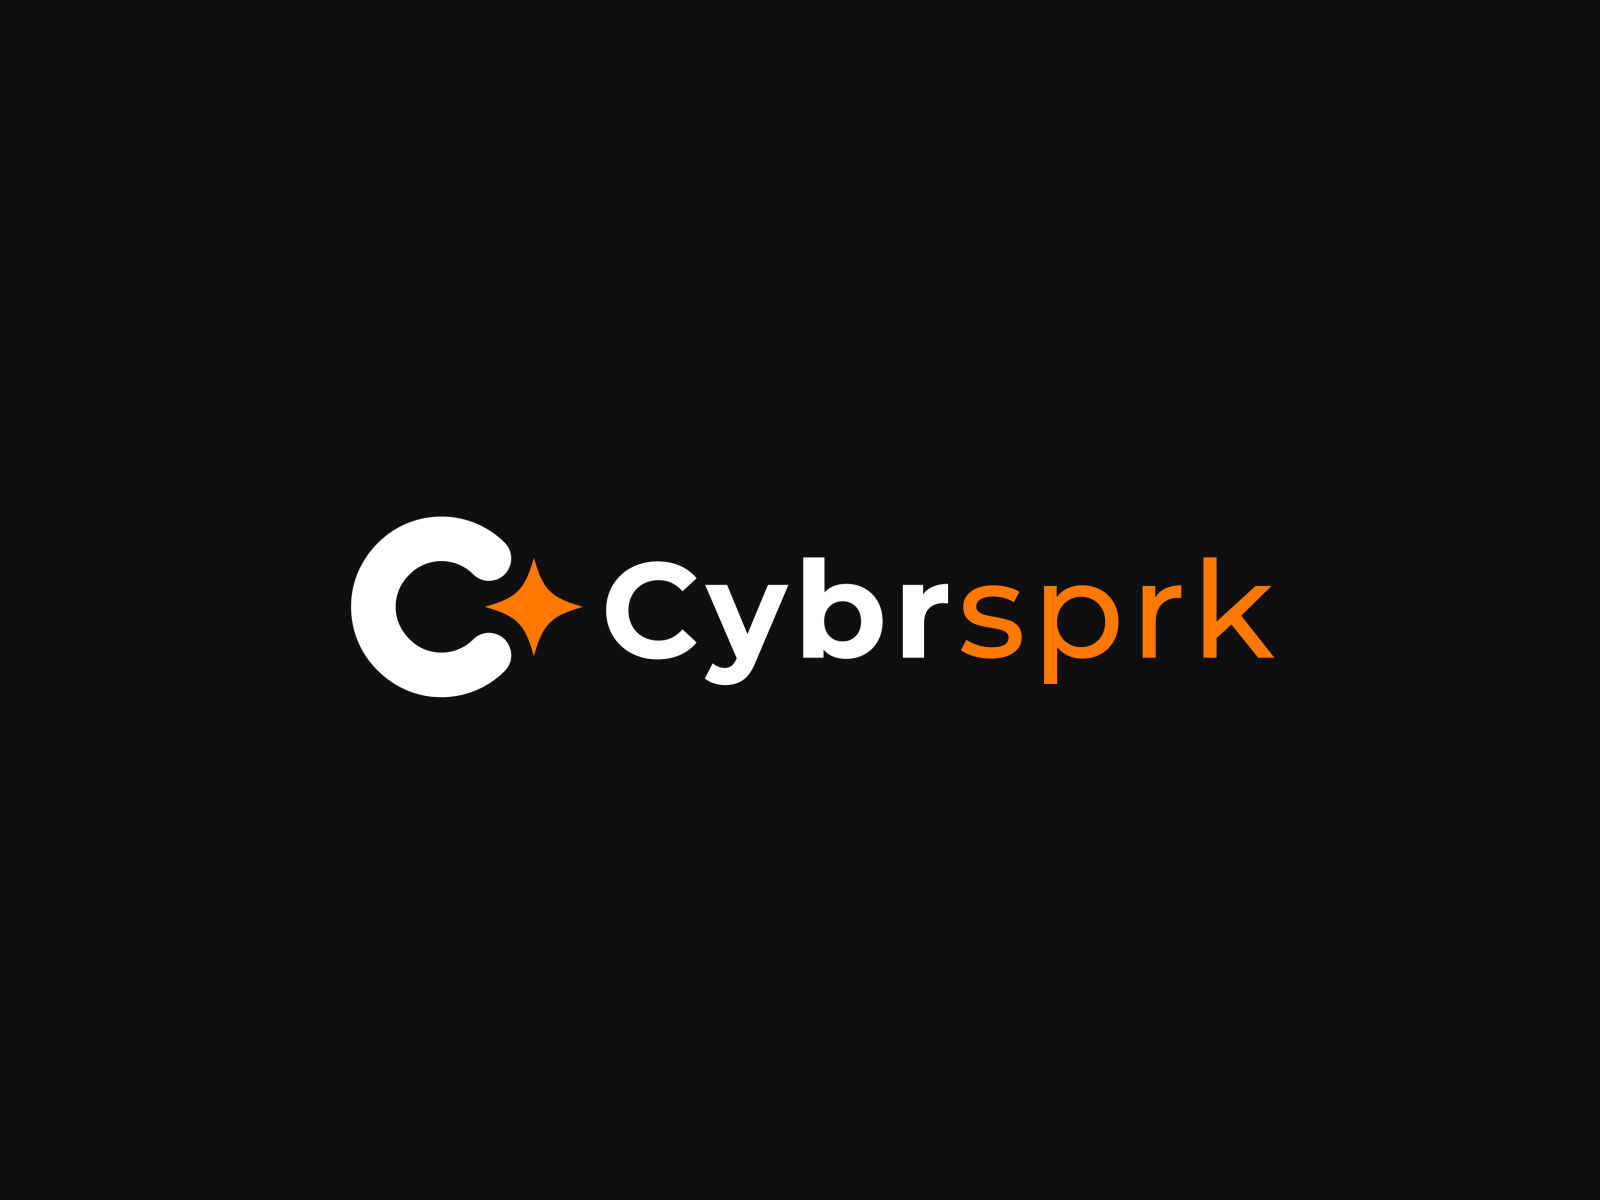 Cyberspark Logo by Enzamin Khan™ on Dribbble